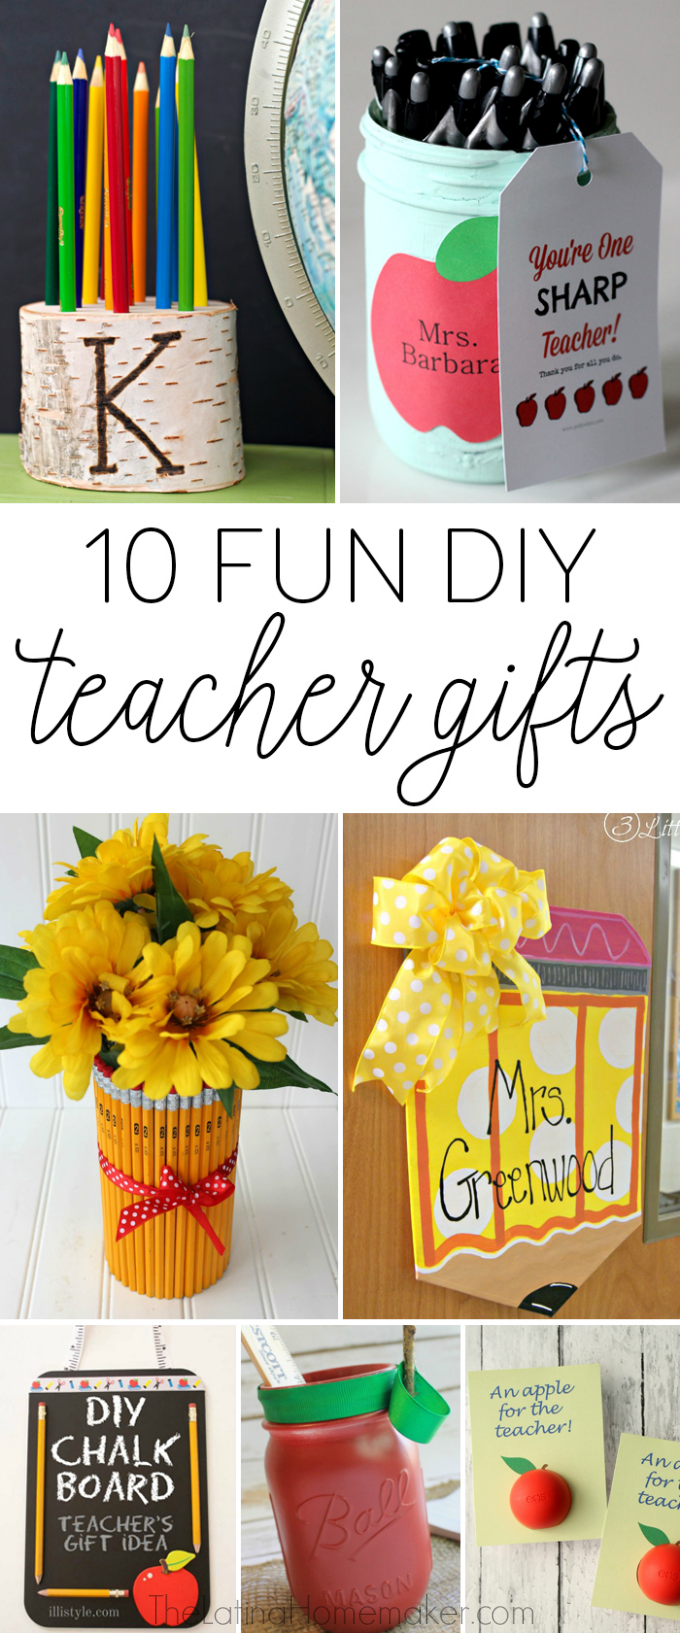 10-fun-diy-teacher-gifts-the-latina-homemaker